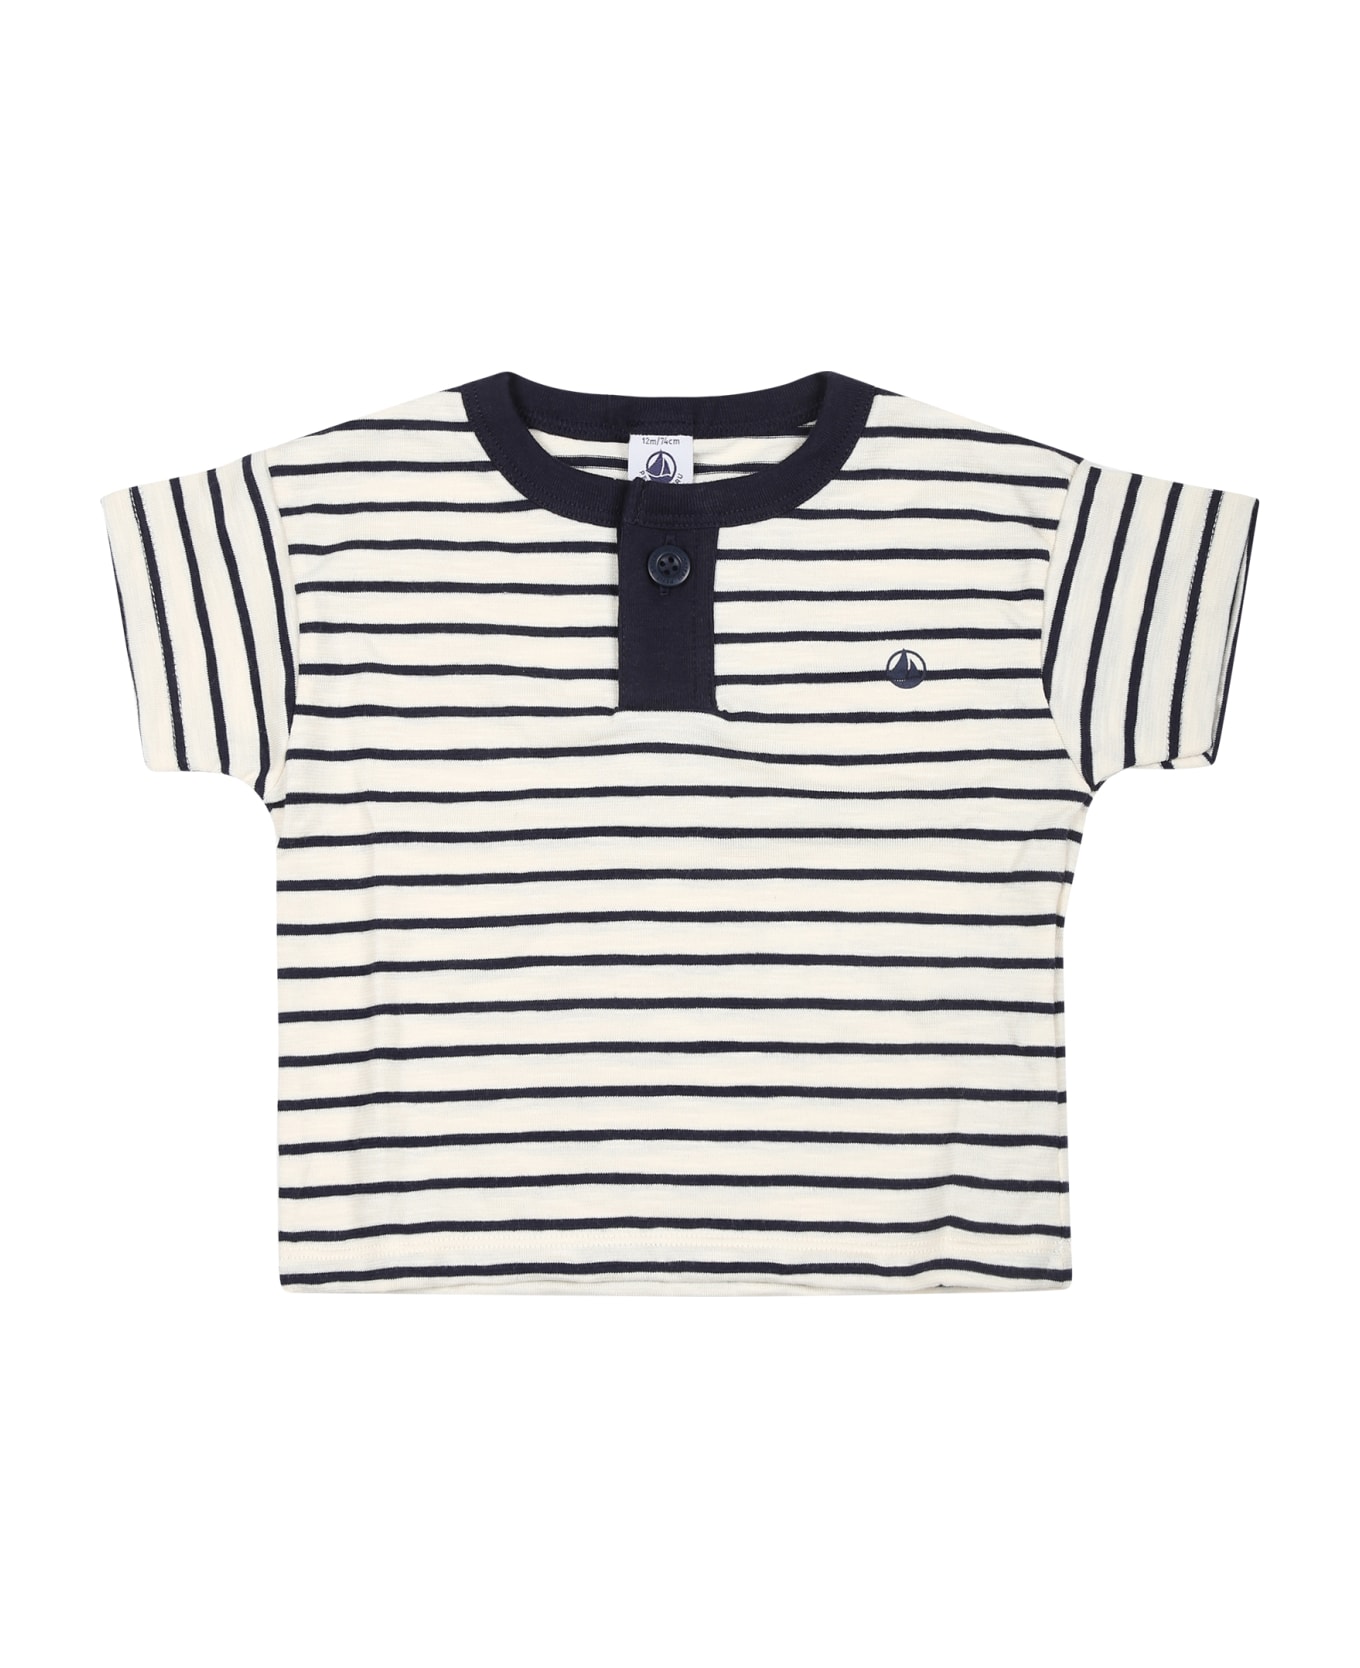 Petit Bateau Ivory T-shirt For Baby Boy With Logo - Ivory